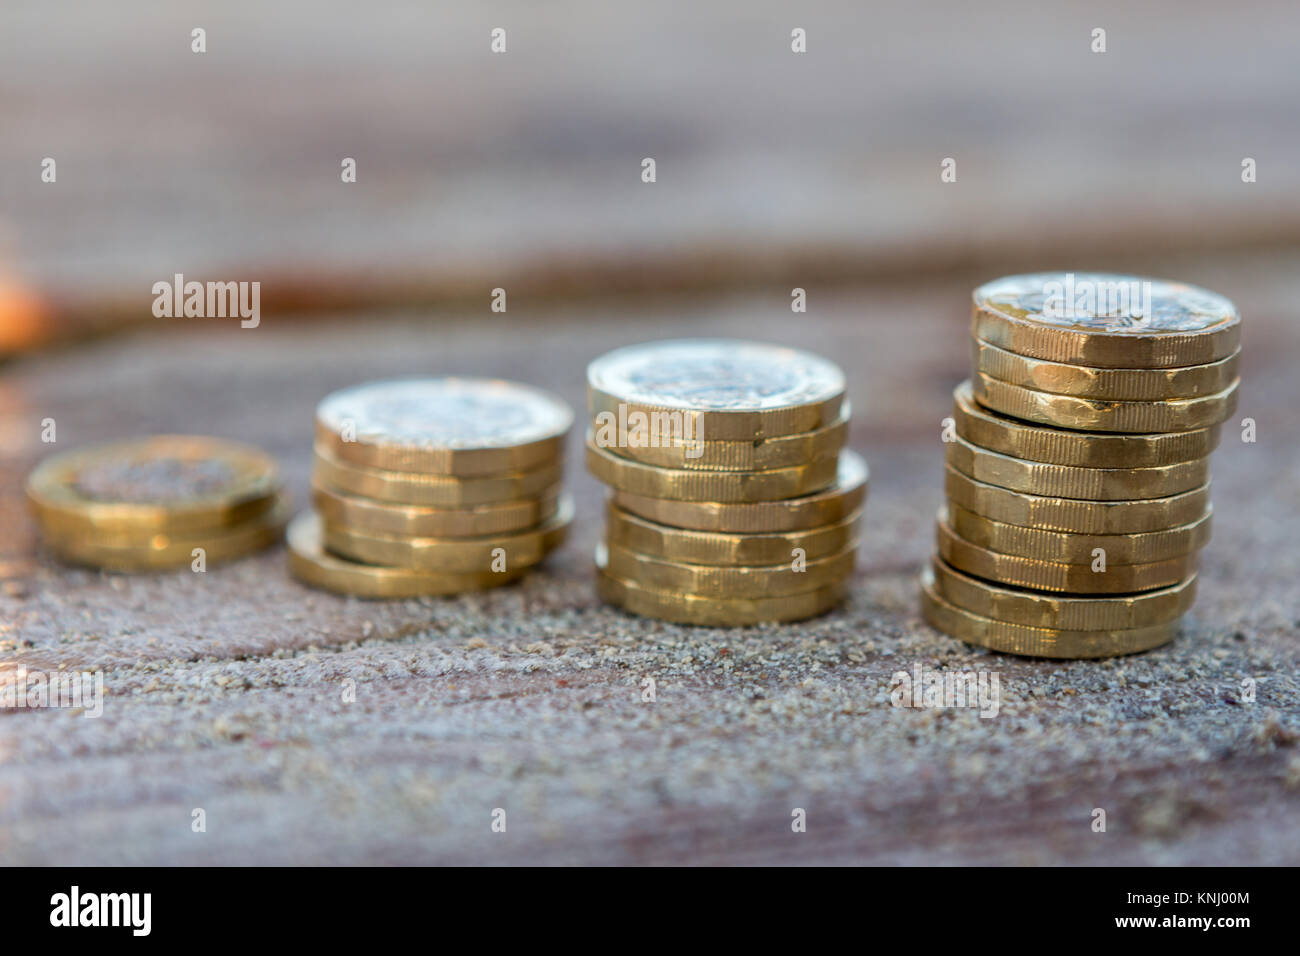 Foto di quattro pile British pound monete. Regno Unito denaro, nuovo chili in una luce calda. Foto Stock